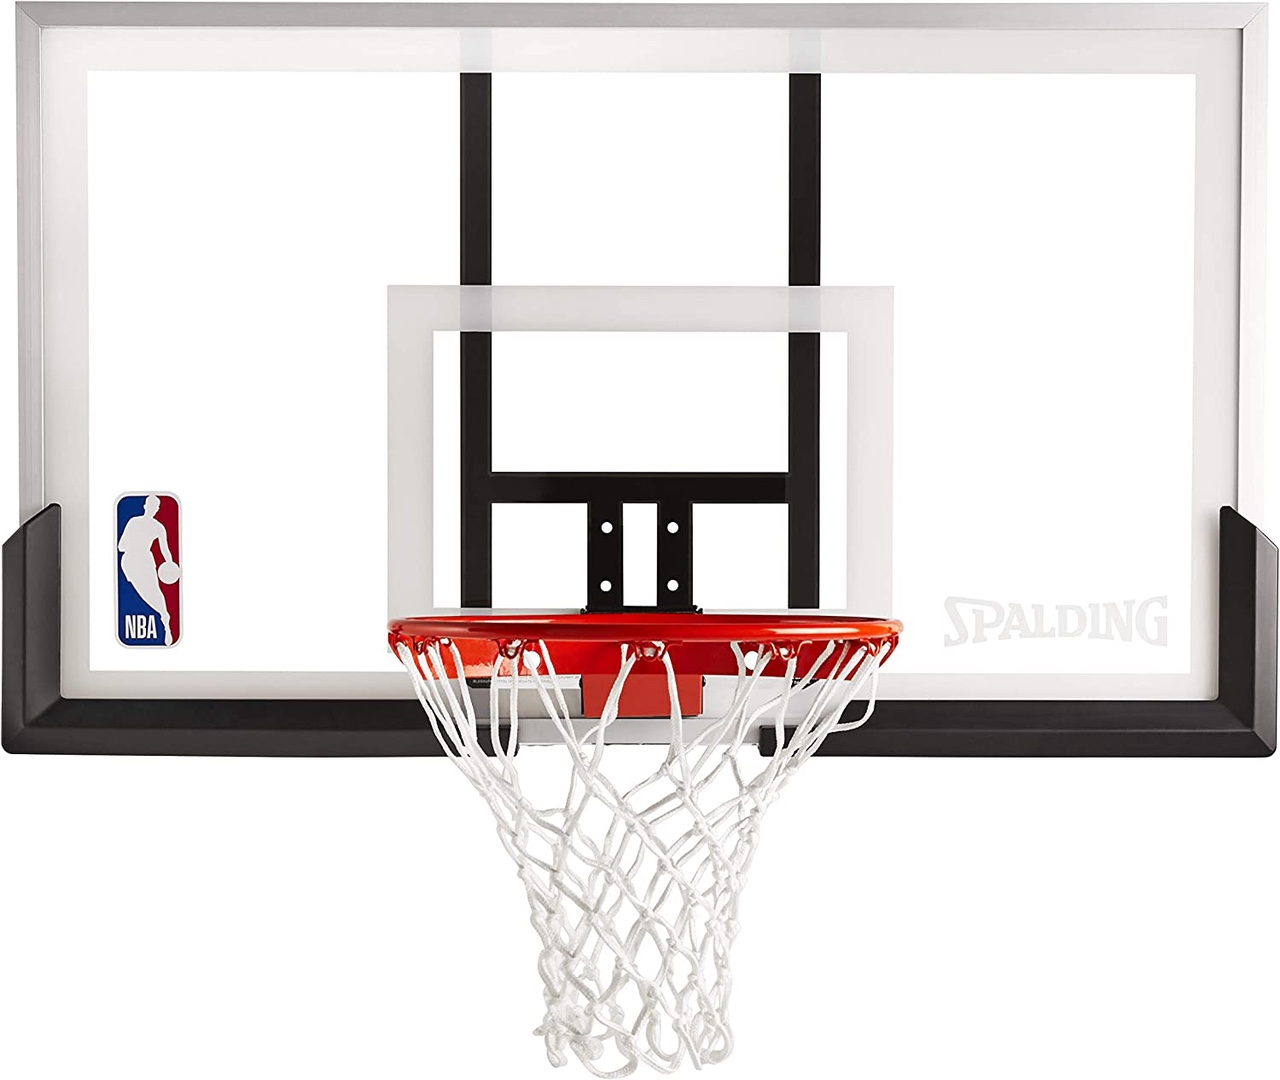 deportes - Tablero de basket basketball baloncesto nueva en acrilico con aro, malla y bola 0